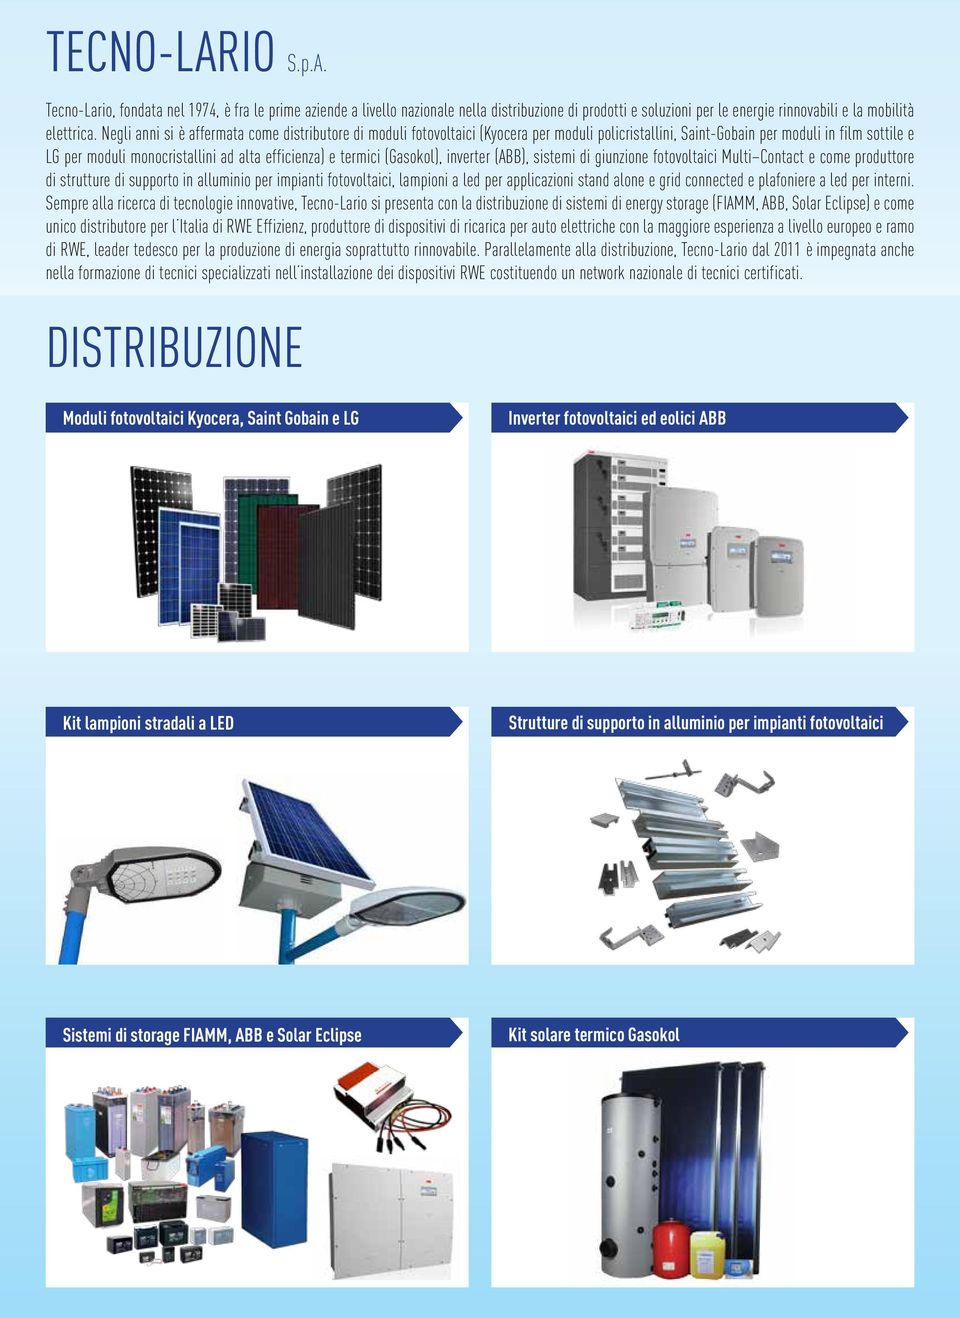 termici (Gasokol), inverter (ABB), sistemi di giunzione fotovoltaici Multi Contact e come produttore di strutture di supporto in alluminio per impianti fotovoltaici, lampioni a led per applicazioni